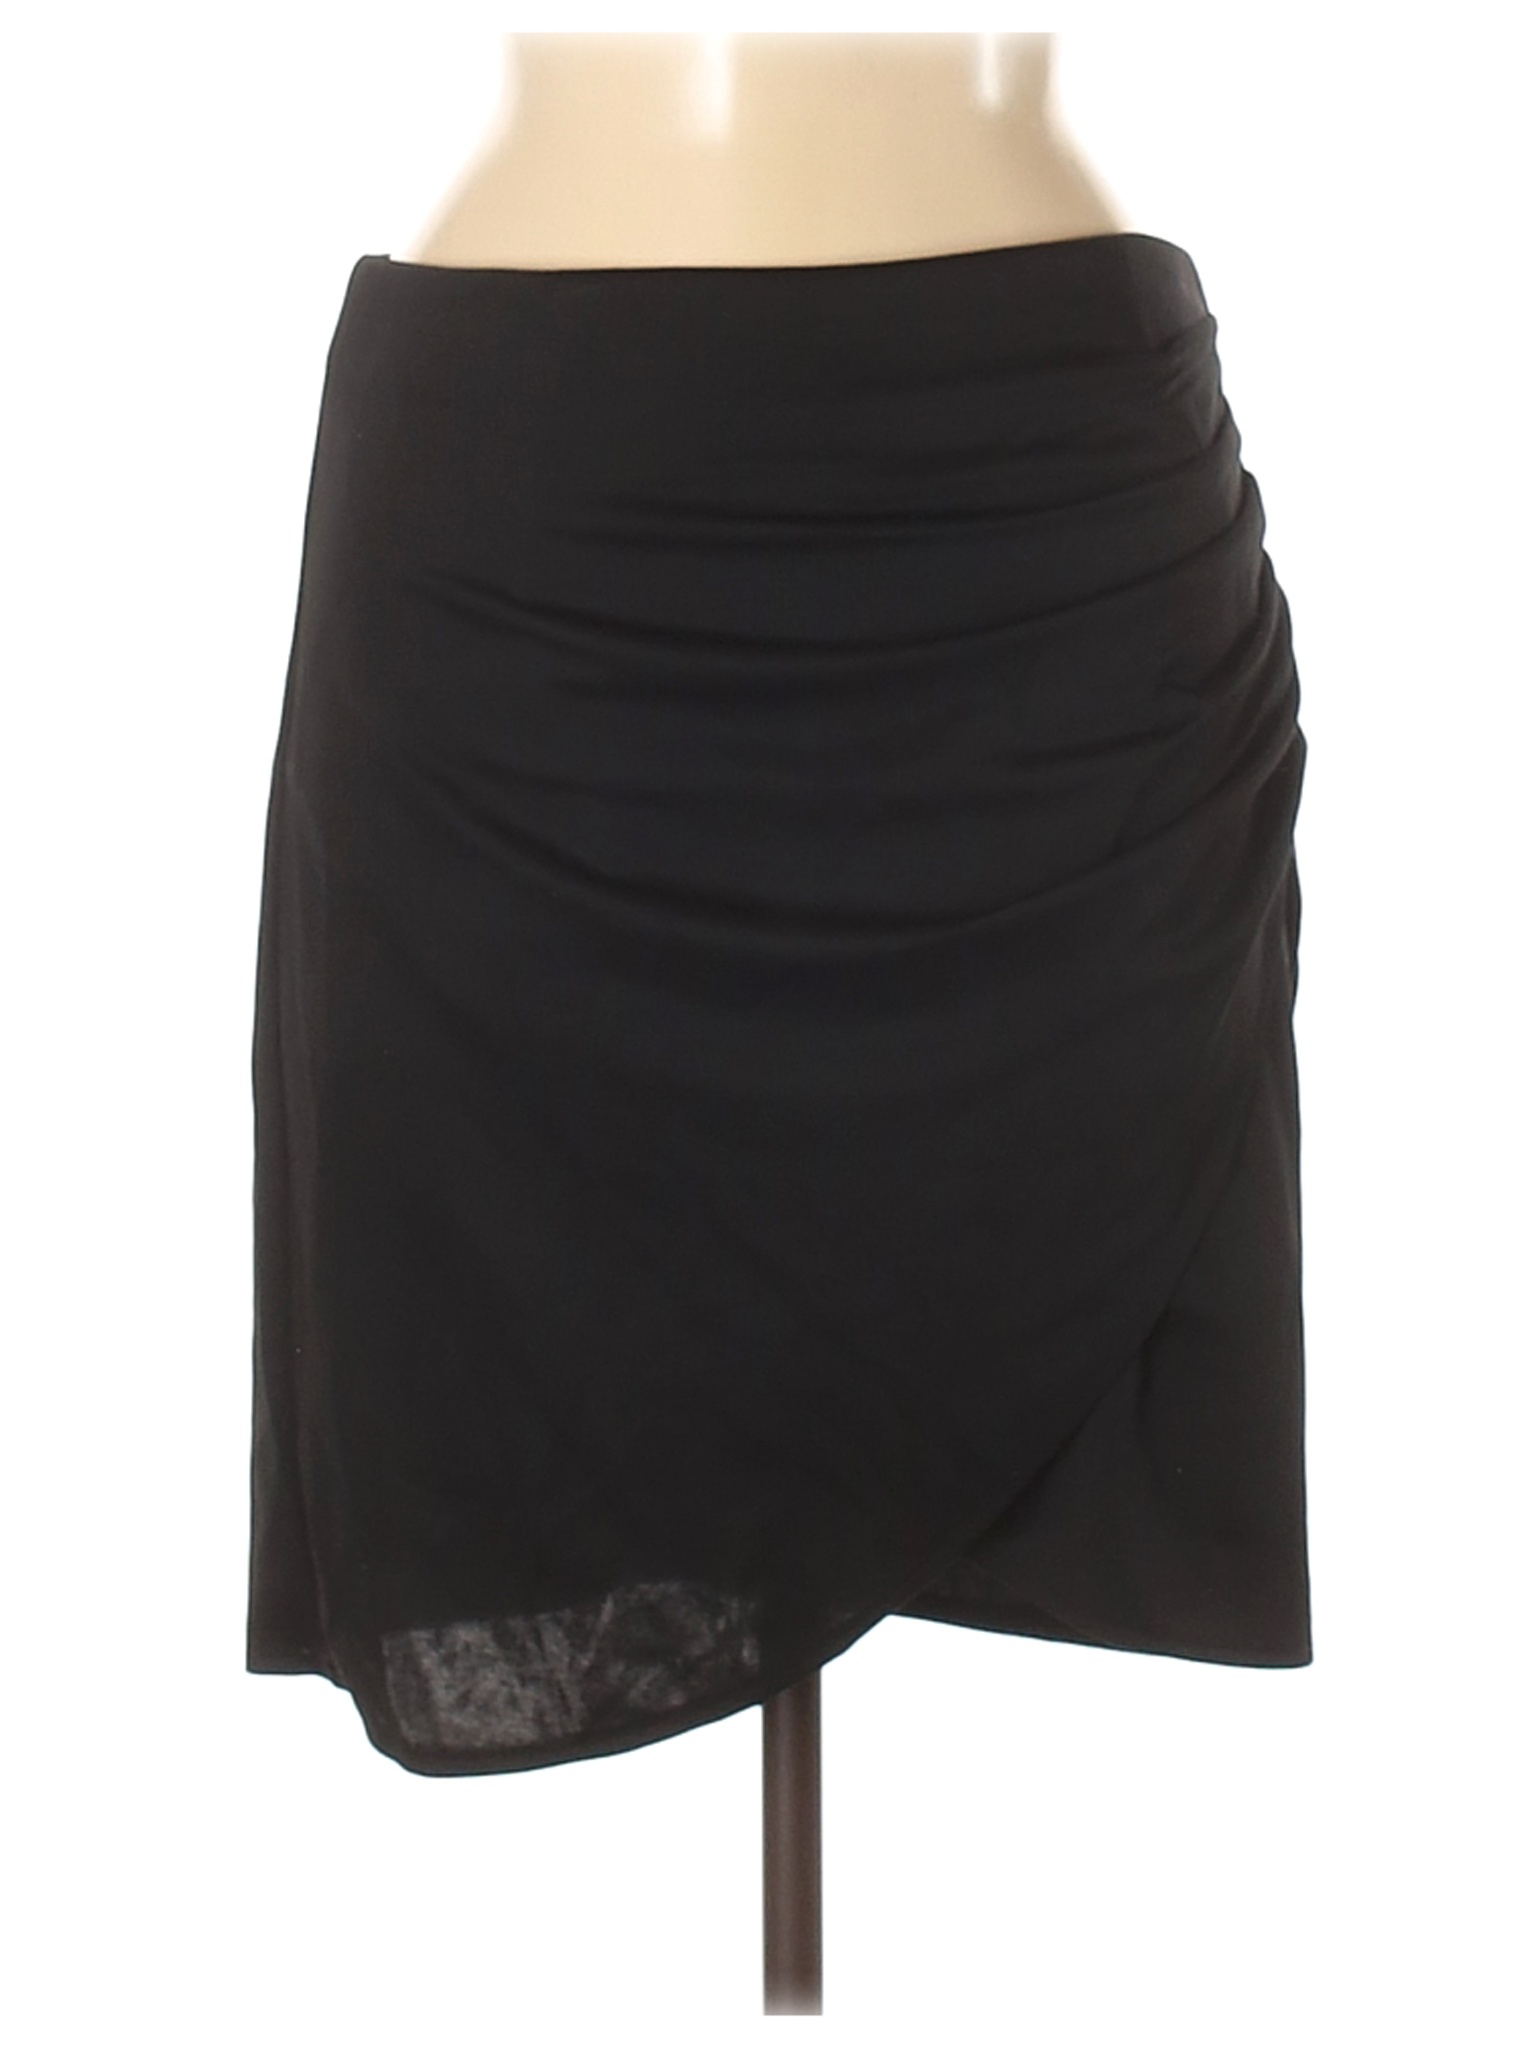 Unbranded Women Black Casual Skirt M | eBay